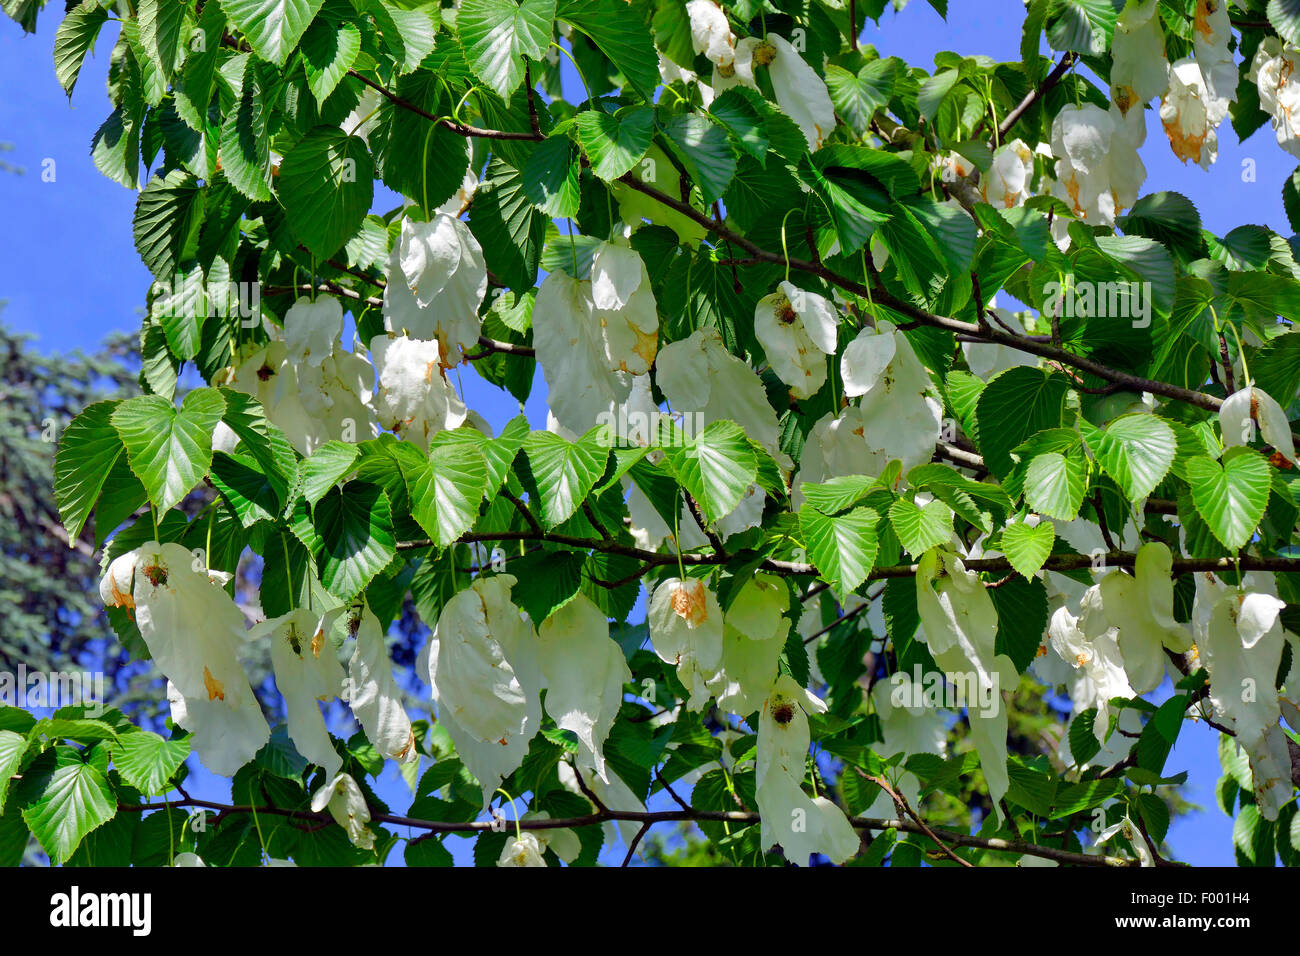 pocket-handkerchief tree (Davidia involucrata), blooming branch, Germany Stock Photo